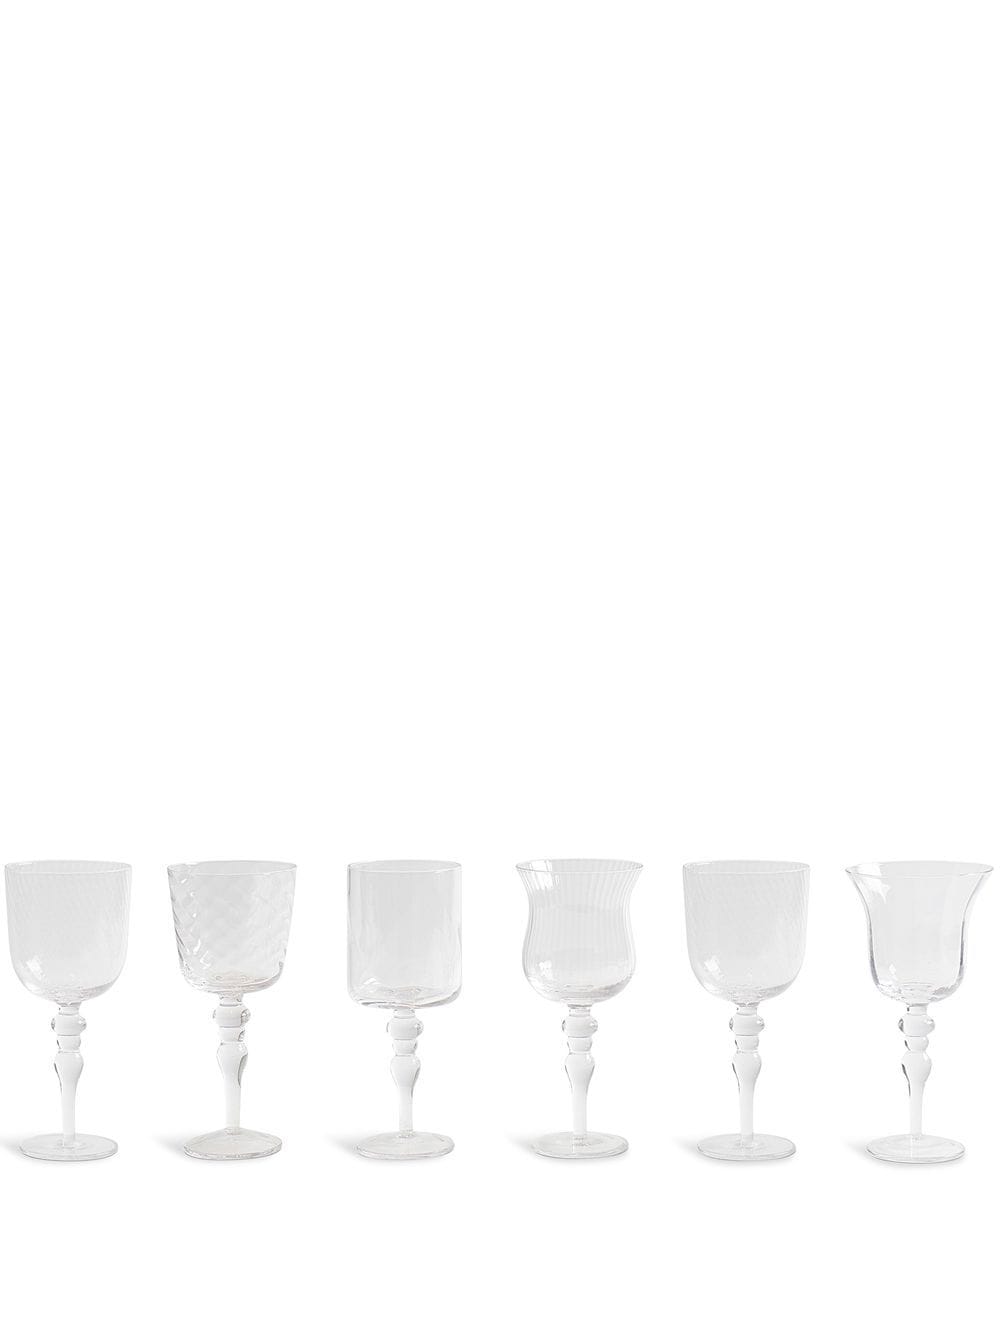 Bitossi Home Assorted Goblets glasses (set of 6) - White von Bitossi Home